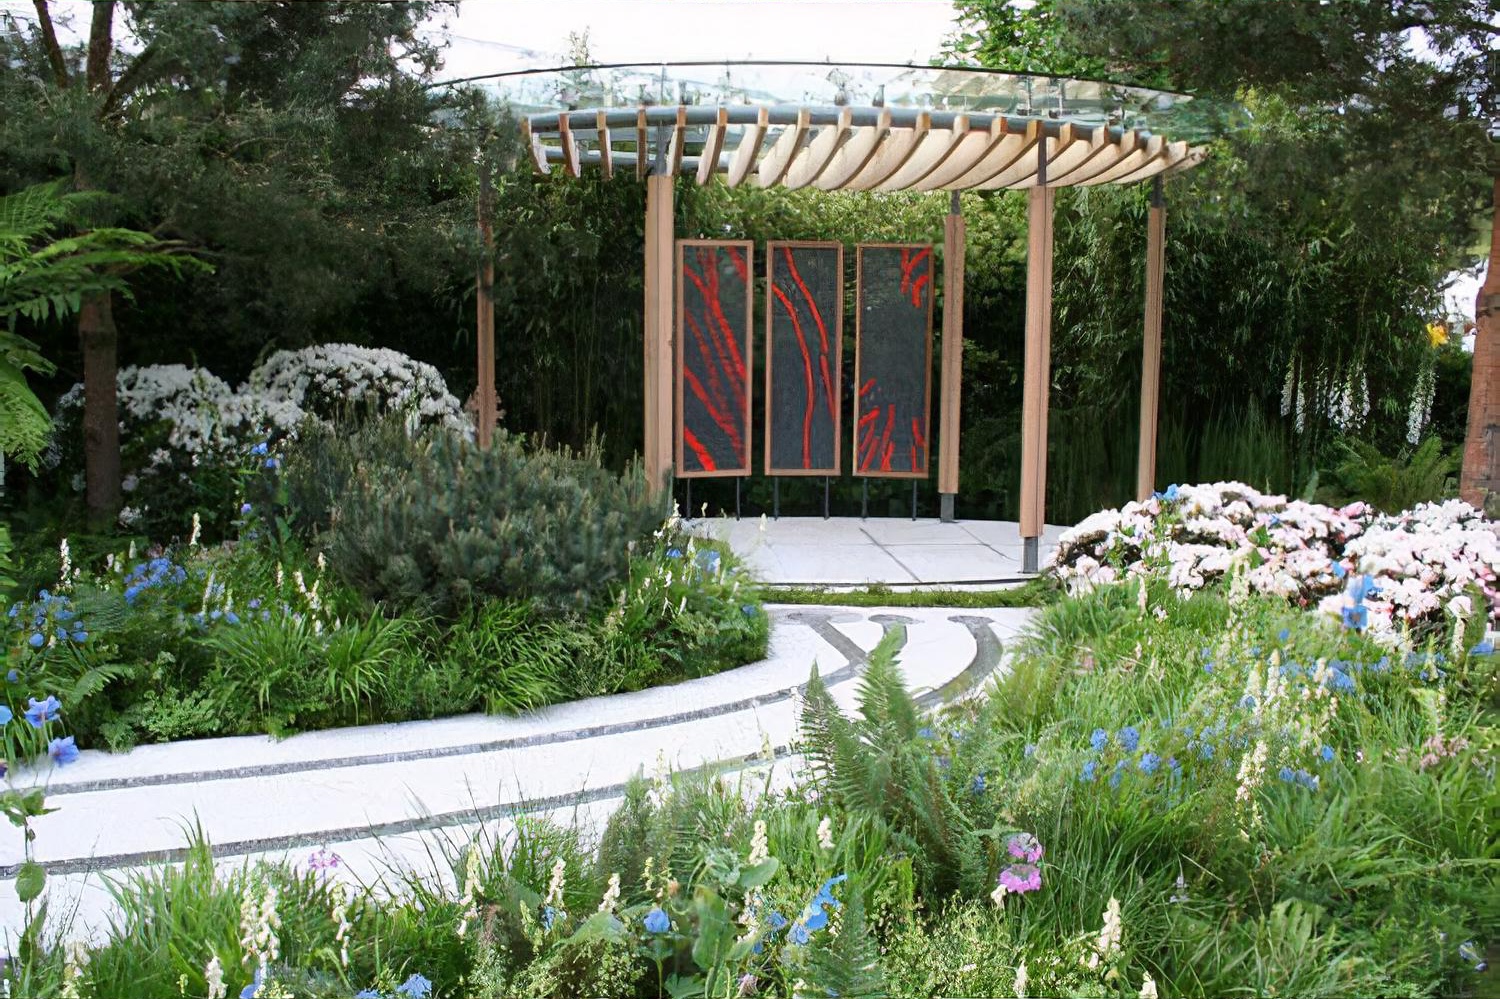 Homebase Cornish Memories garden by garden designer Thomas Hoblyn Chelsea Flower Show 2011